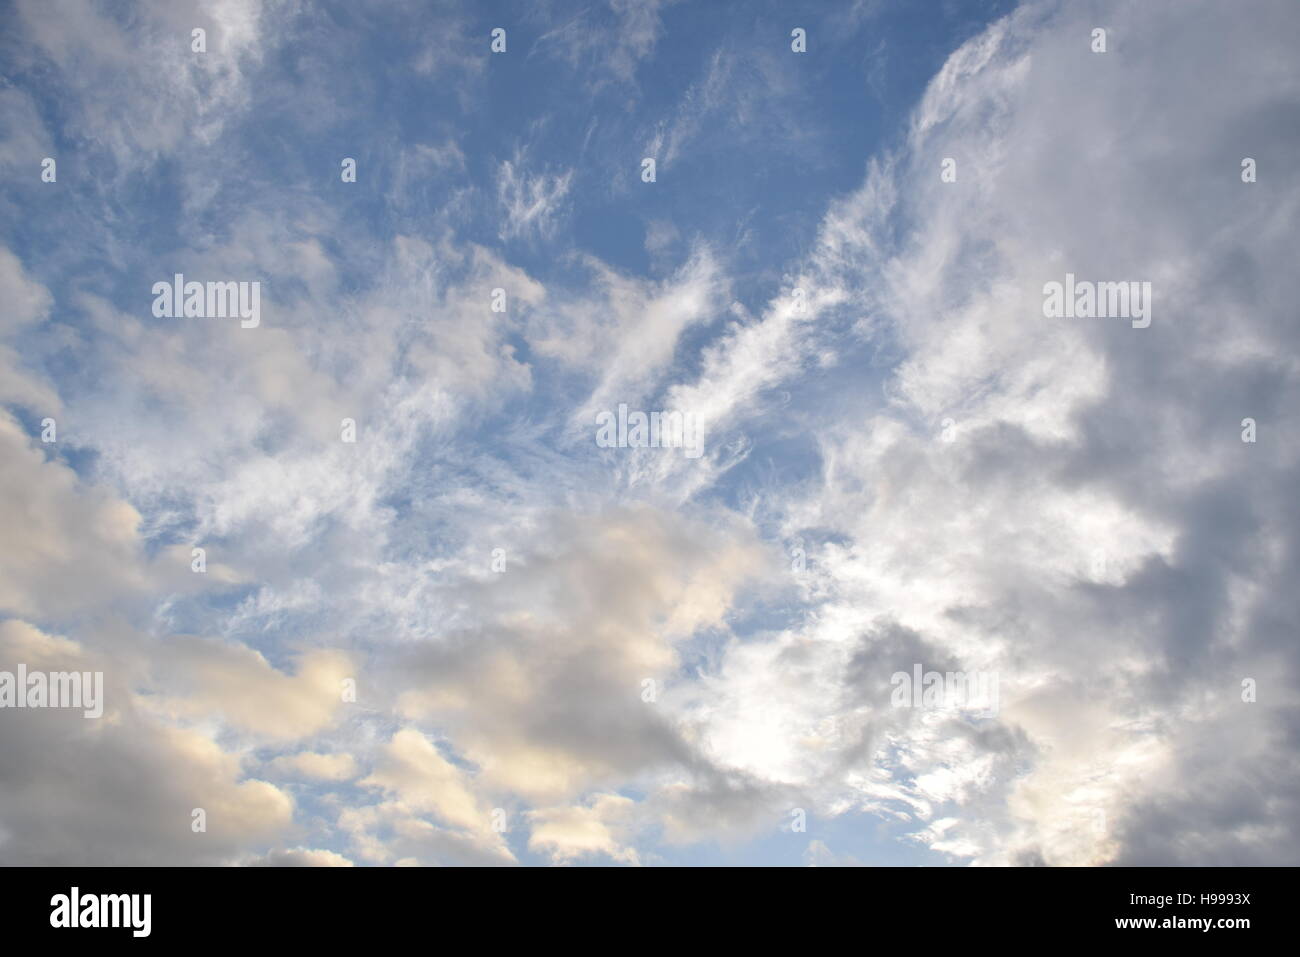 Increíble cielo azul con nubes, puede utilizarse como fondo Foto de stock